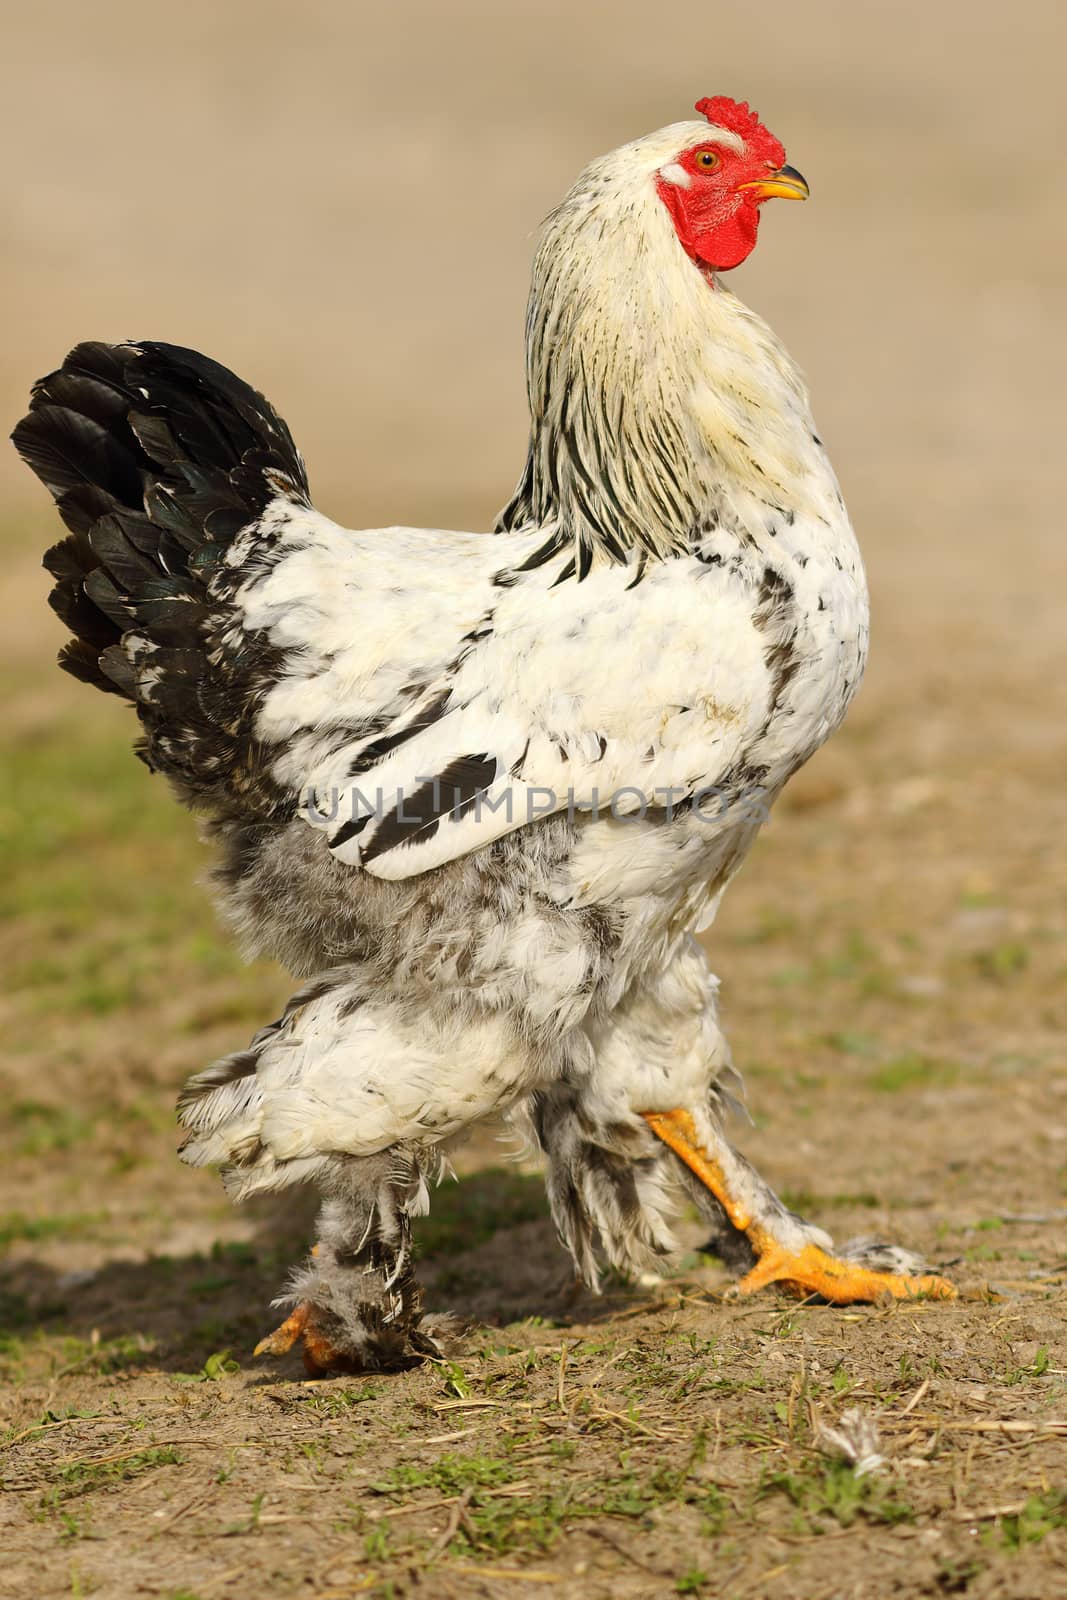 mottled rooster walking proud in farm yard by taviphoto